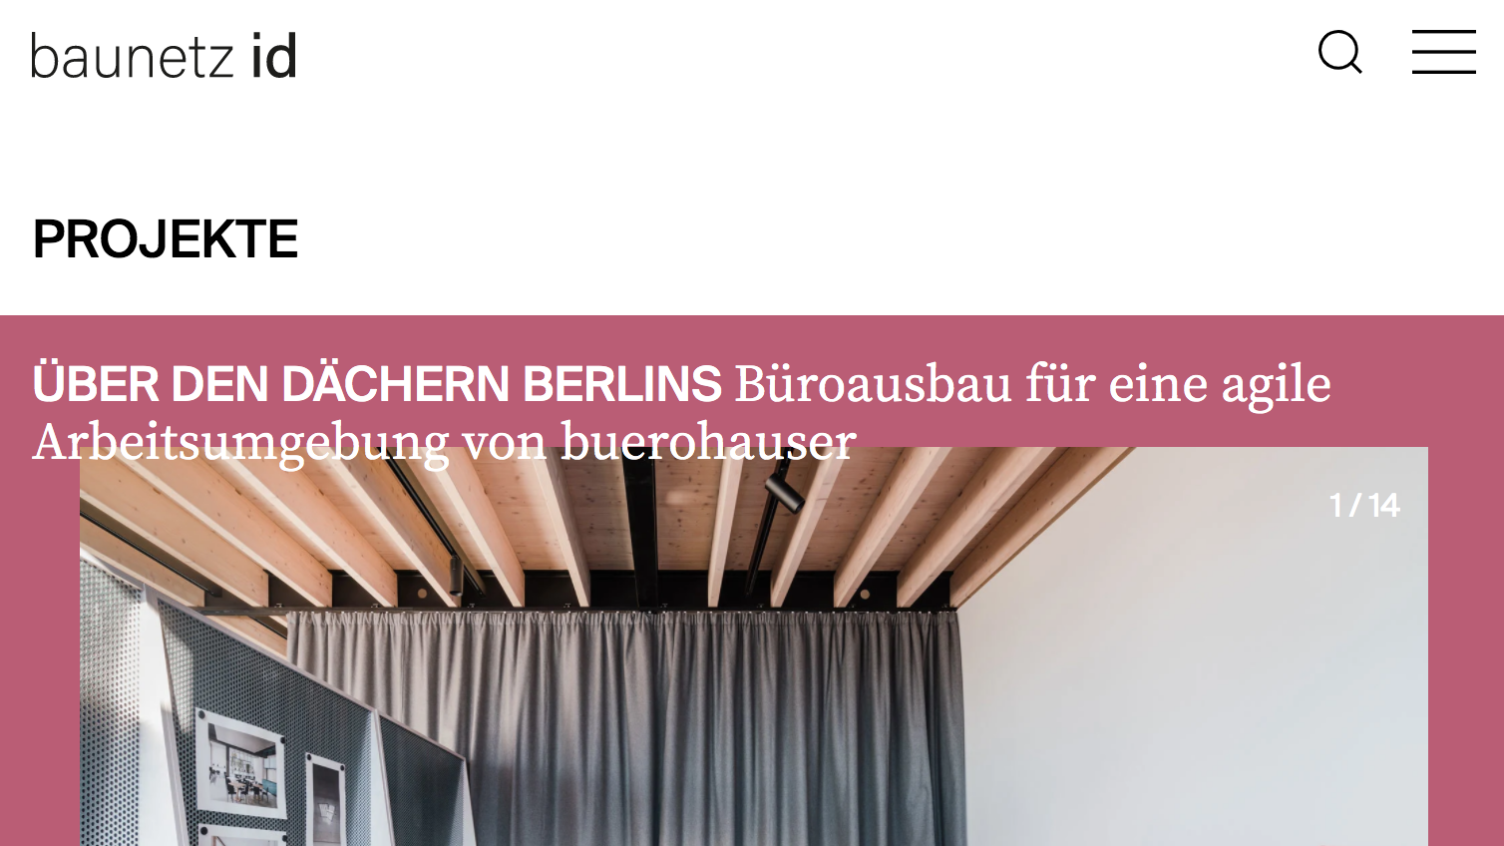 Baunetz id schreibt über unsere Innenarchitektur in unserem Berliner Büro